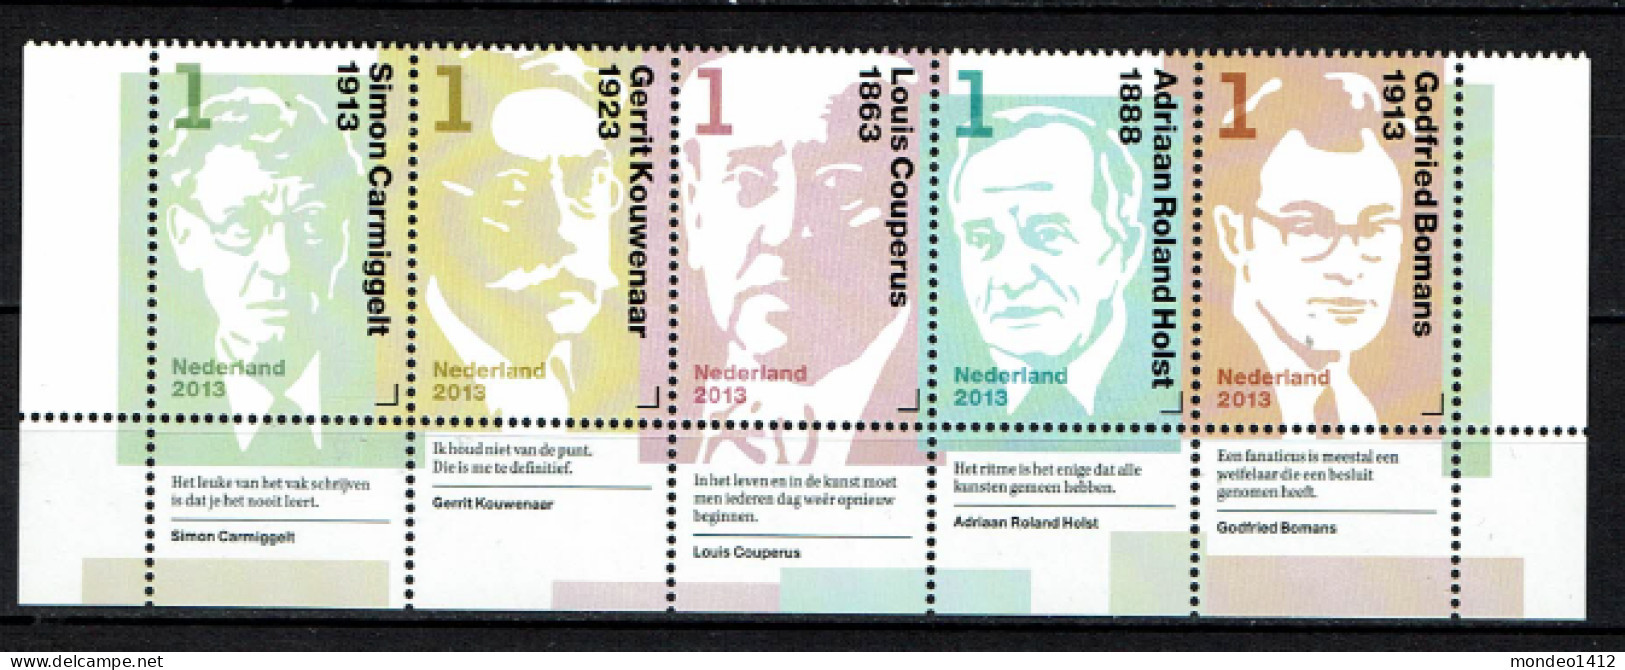 Nederland 2013 - NVPH 3059/3063 - Nederlandse Schrijvers, Dutch Writers, écrivains - MNH - Unused Stamps